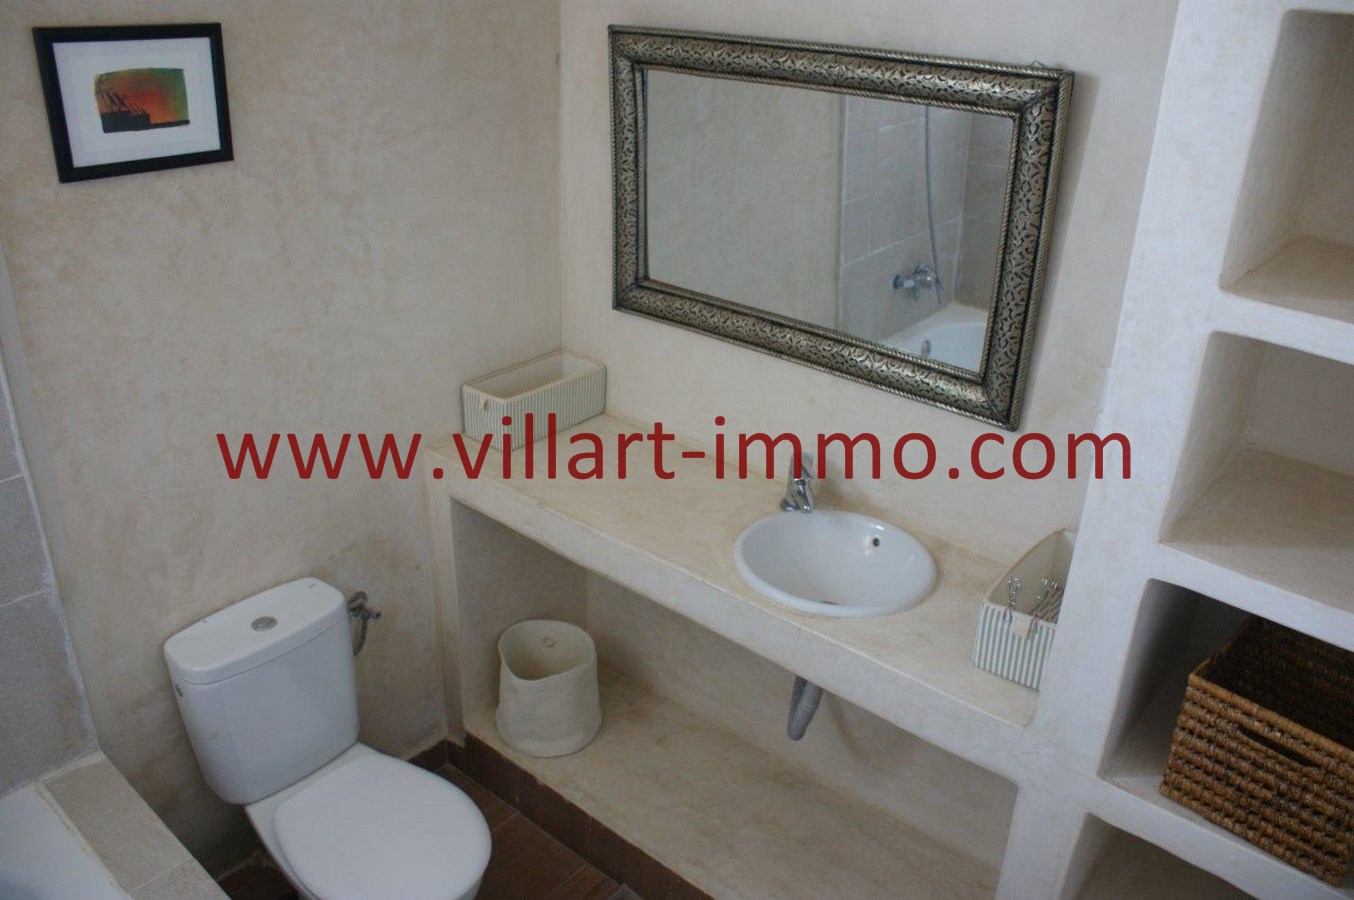 9-Location-Appartement-Meublé-Centre ville-Tanger-Salle de bain-L893-Villart immo